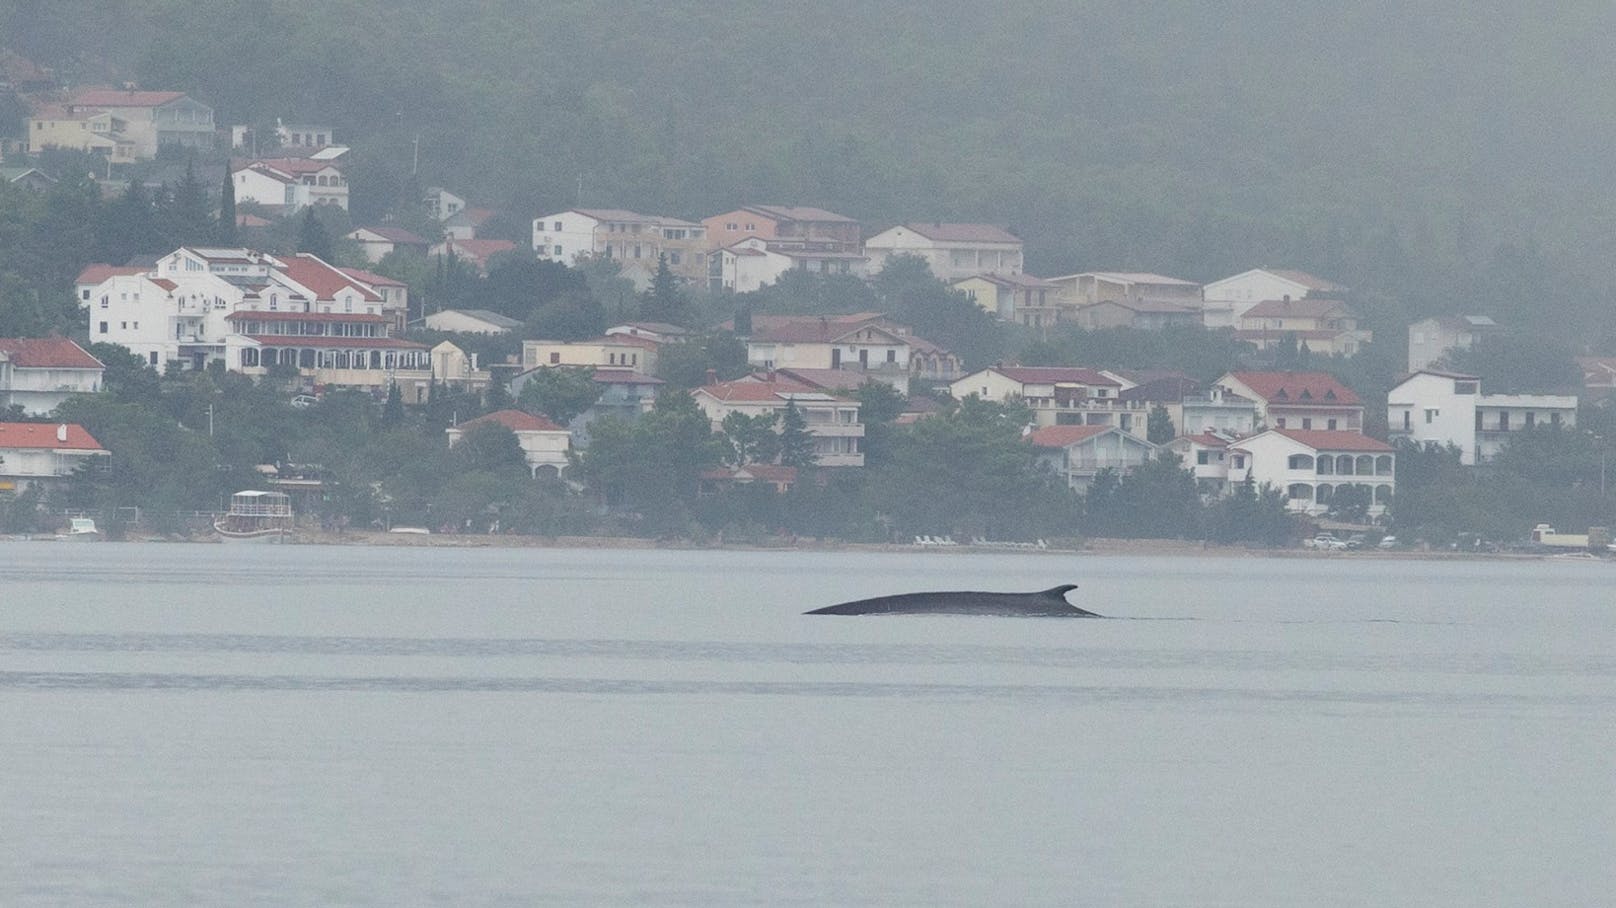 Der Wal, der am Dienstag vor Starigrad gesichtet wurde.